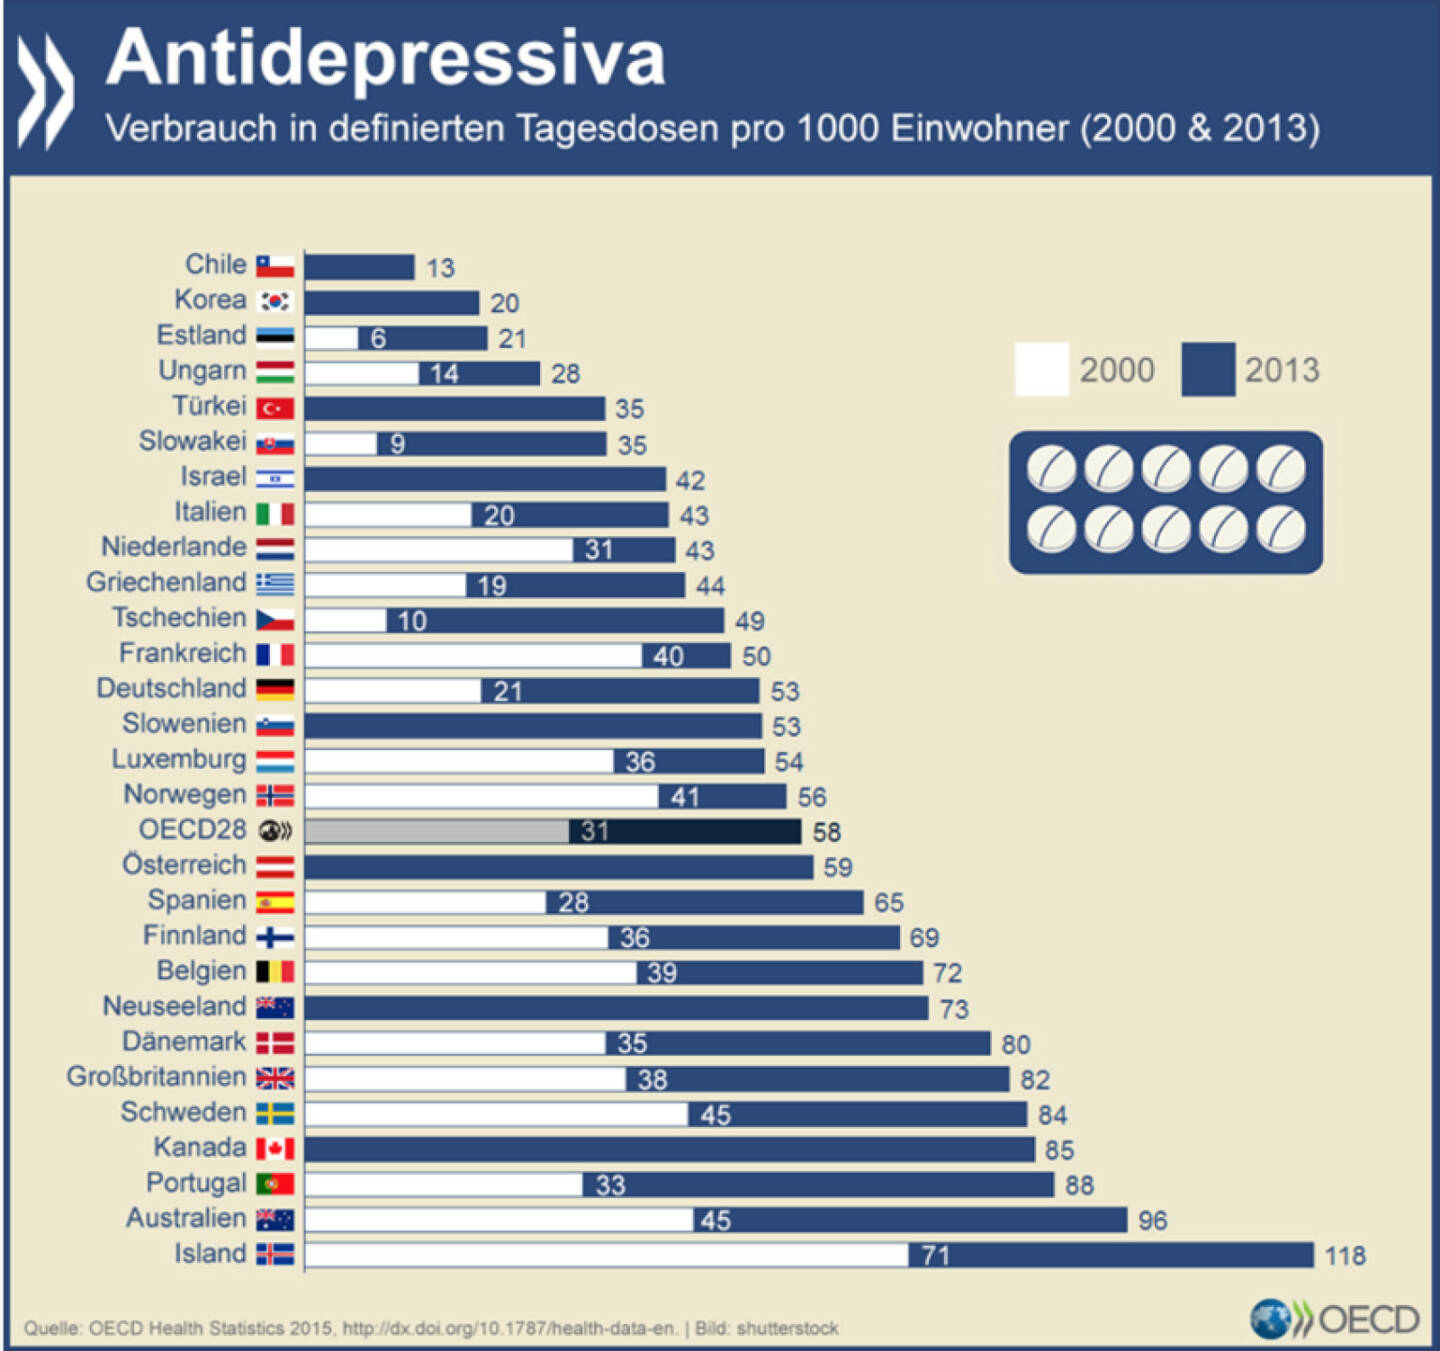 Monday Morning Blues?
Der Konsum von Antidepressiva hat sich in den meisten OECD- Ländern erhöht, doch die Unterschiede sind beträchtlich. Während in Chile 13 Tagesdosen pro tausend Einwohner verbraucht werden, sind es in Island ganze 118.In Deutschland hat sich der Konsum mehr als verdoppelt. http://bit.ly/1lr5KBV